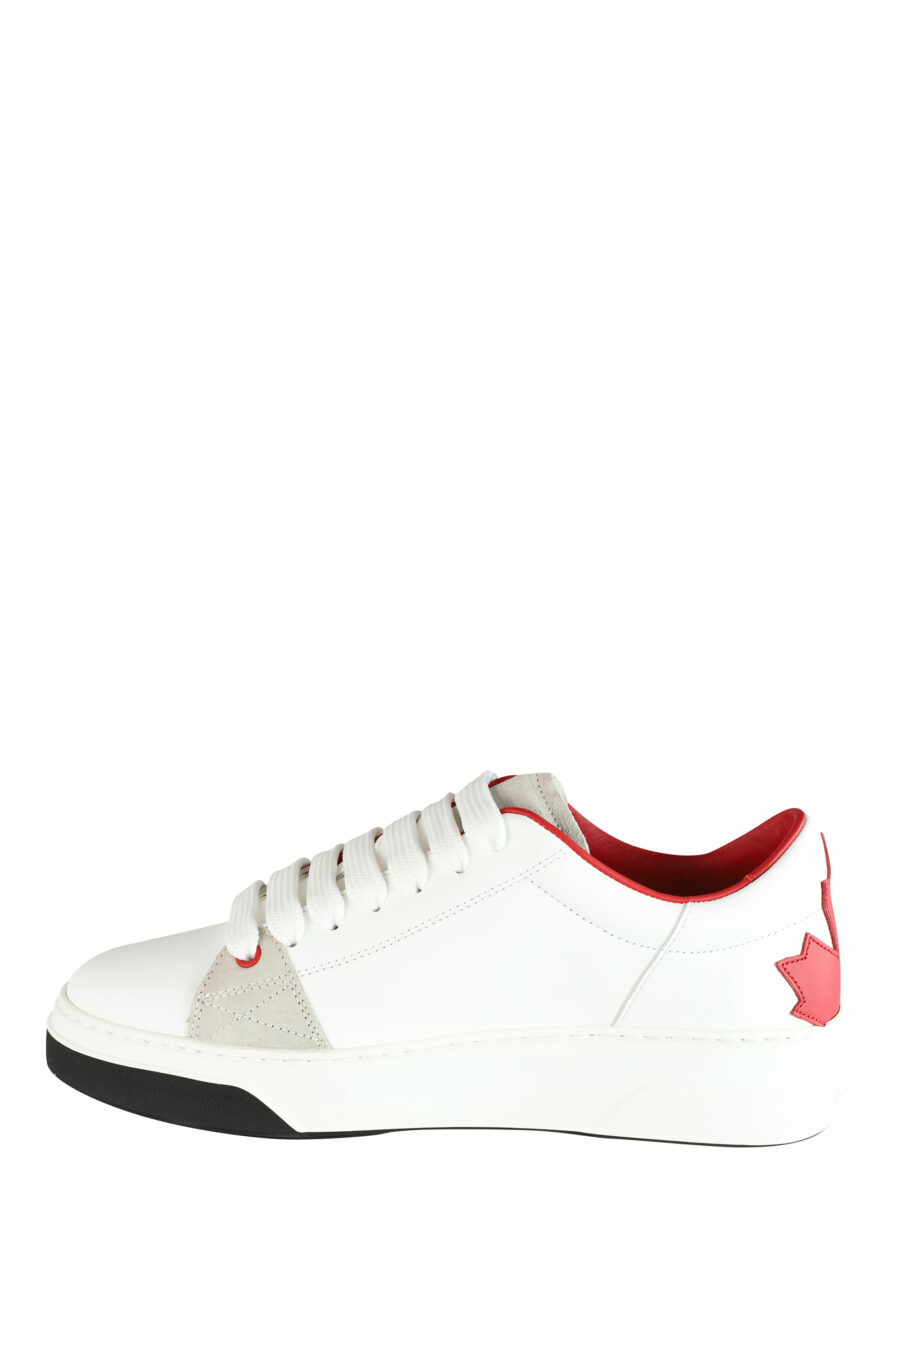 Zapatillas blancas con logo hoja roja y detalles beige - IMG 1439